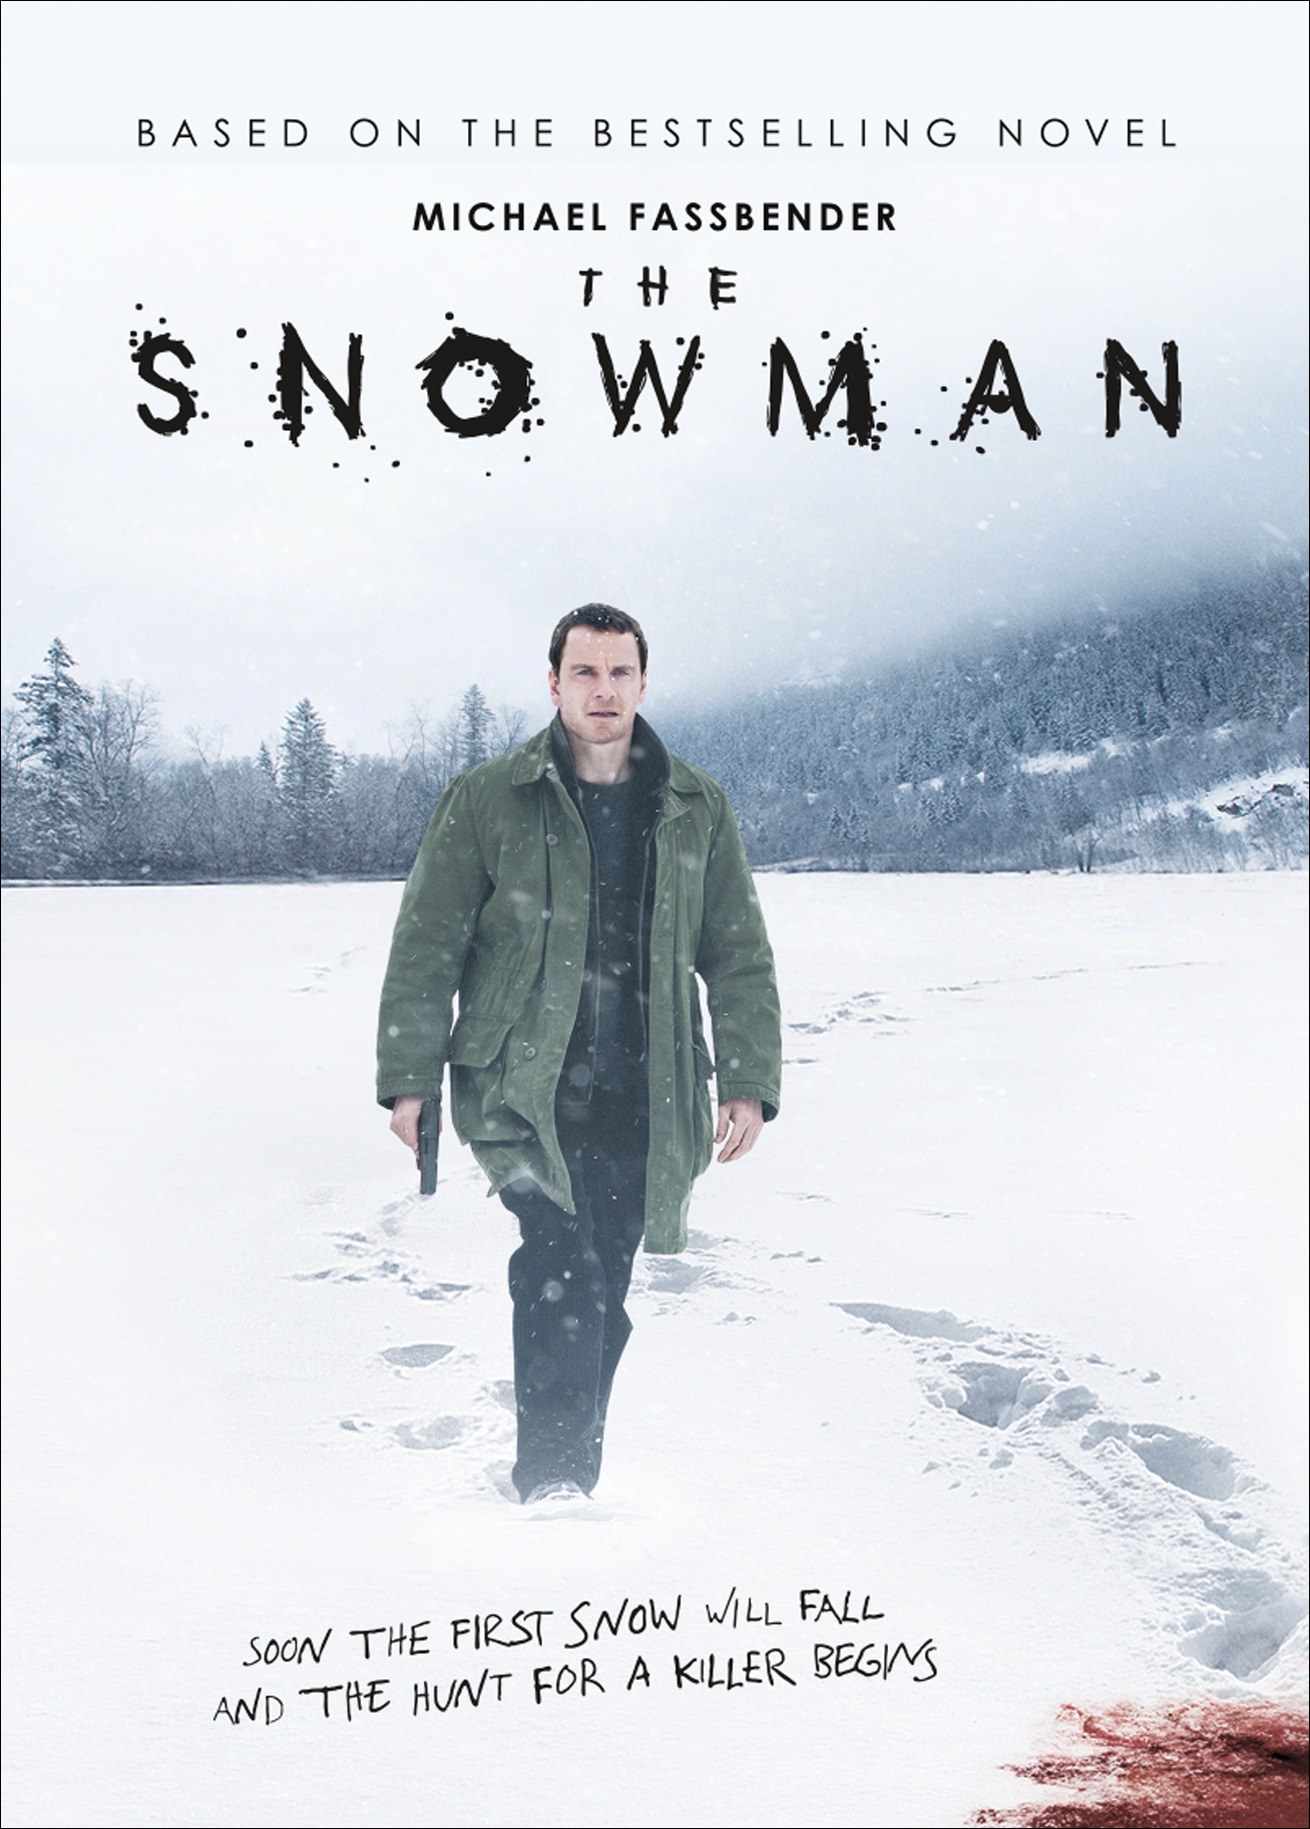 SnowMan DVD